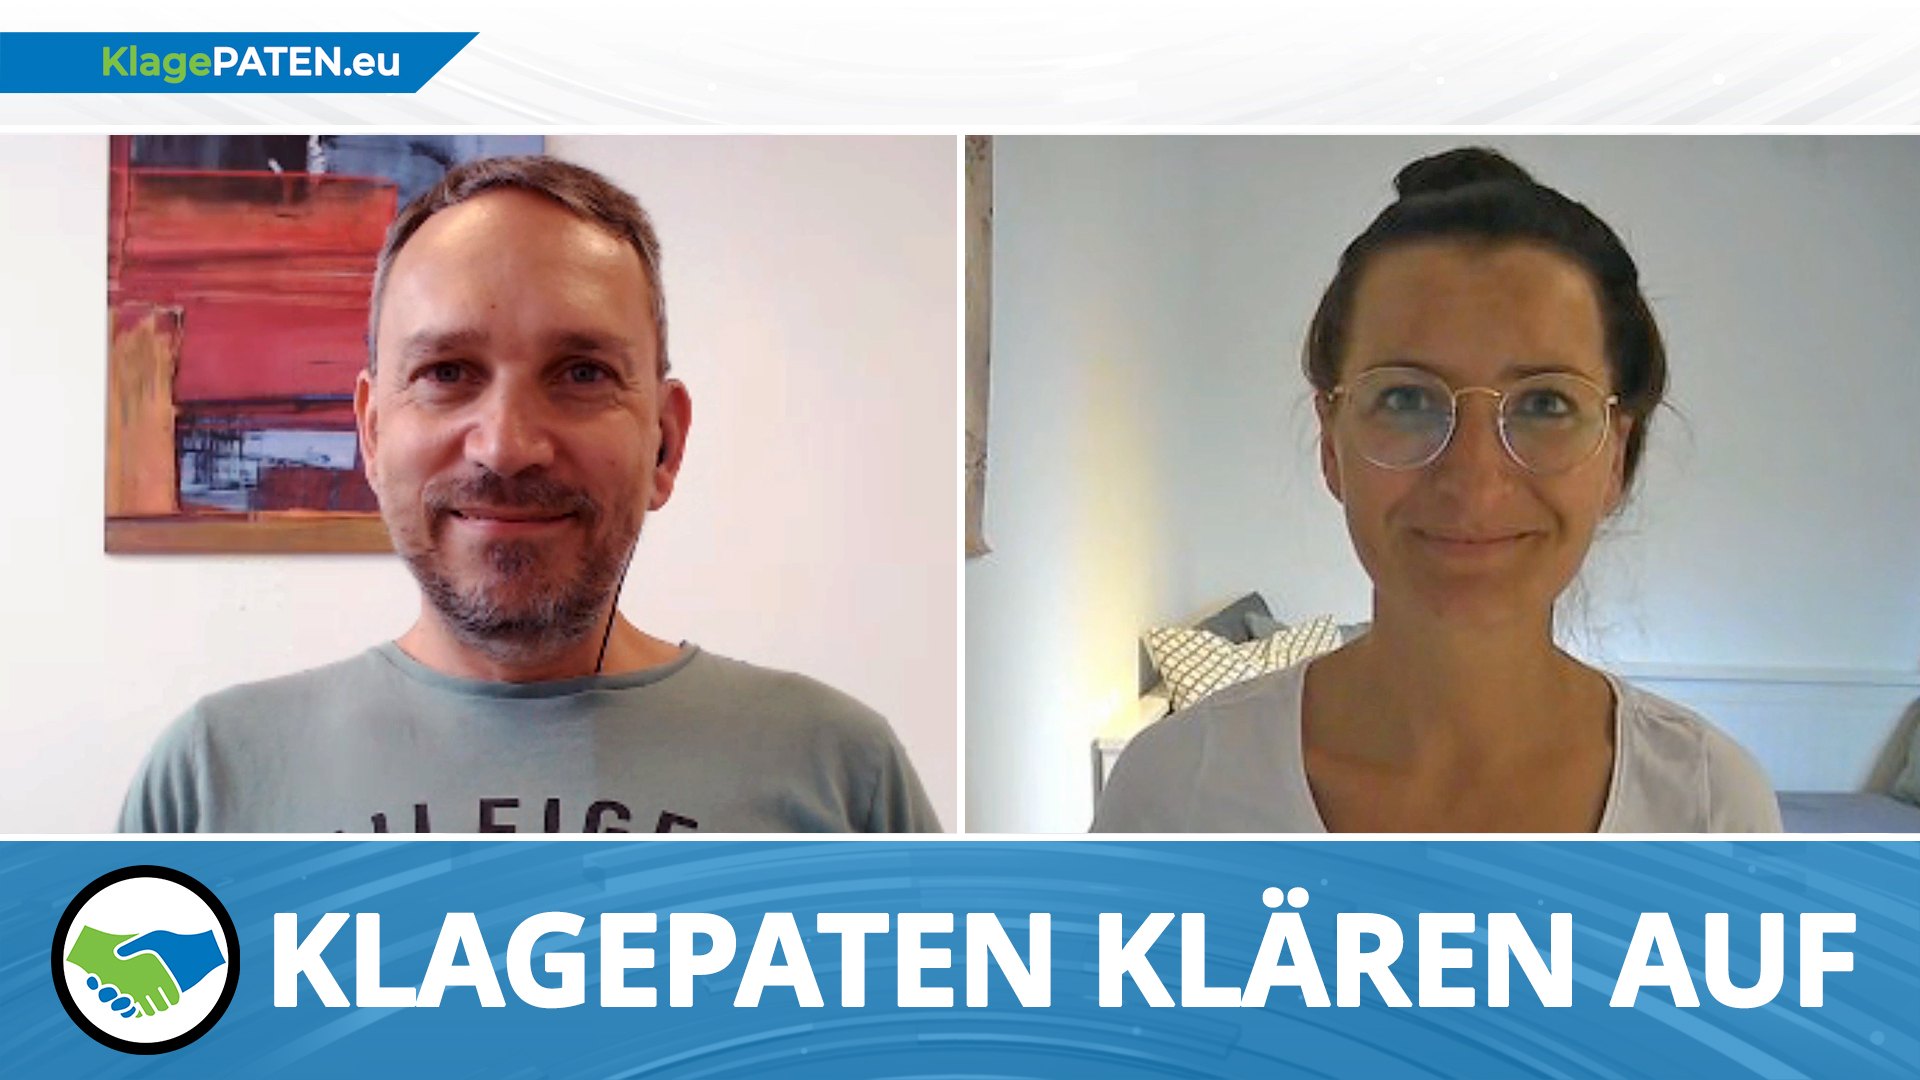 Klagepaten TV #1: Heute Premiere um 20:15 Uhr: das neue Video-Format von Klagepaten mit Gastgeber Ralf Ludwig